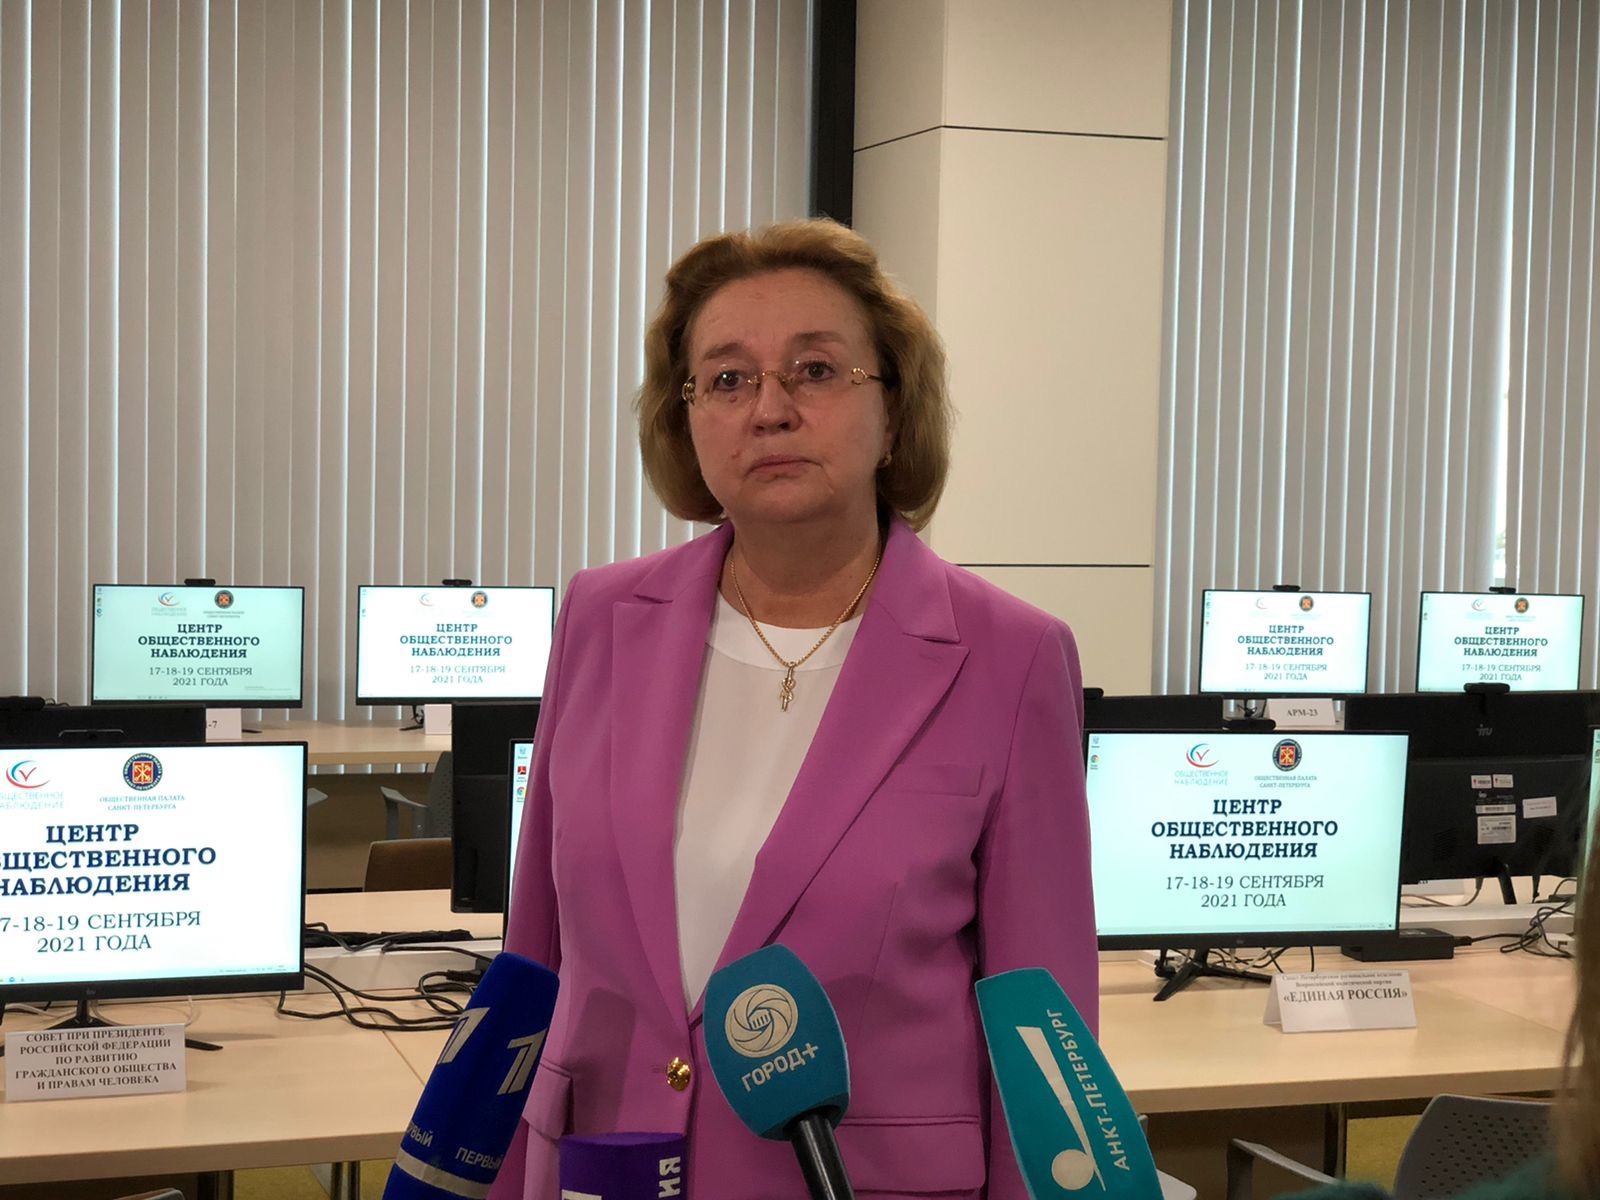 Председатель Общественной палаты Петербурга рассказала о том, как будет работать Центр общественного наблюдения